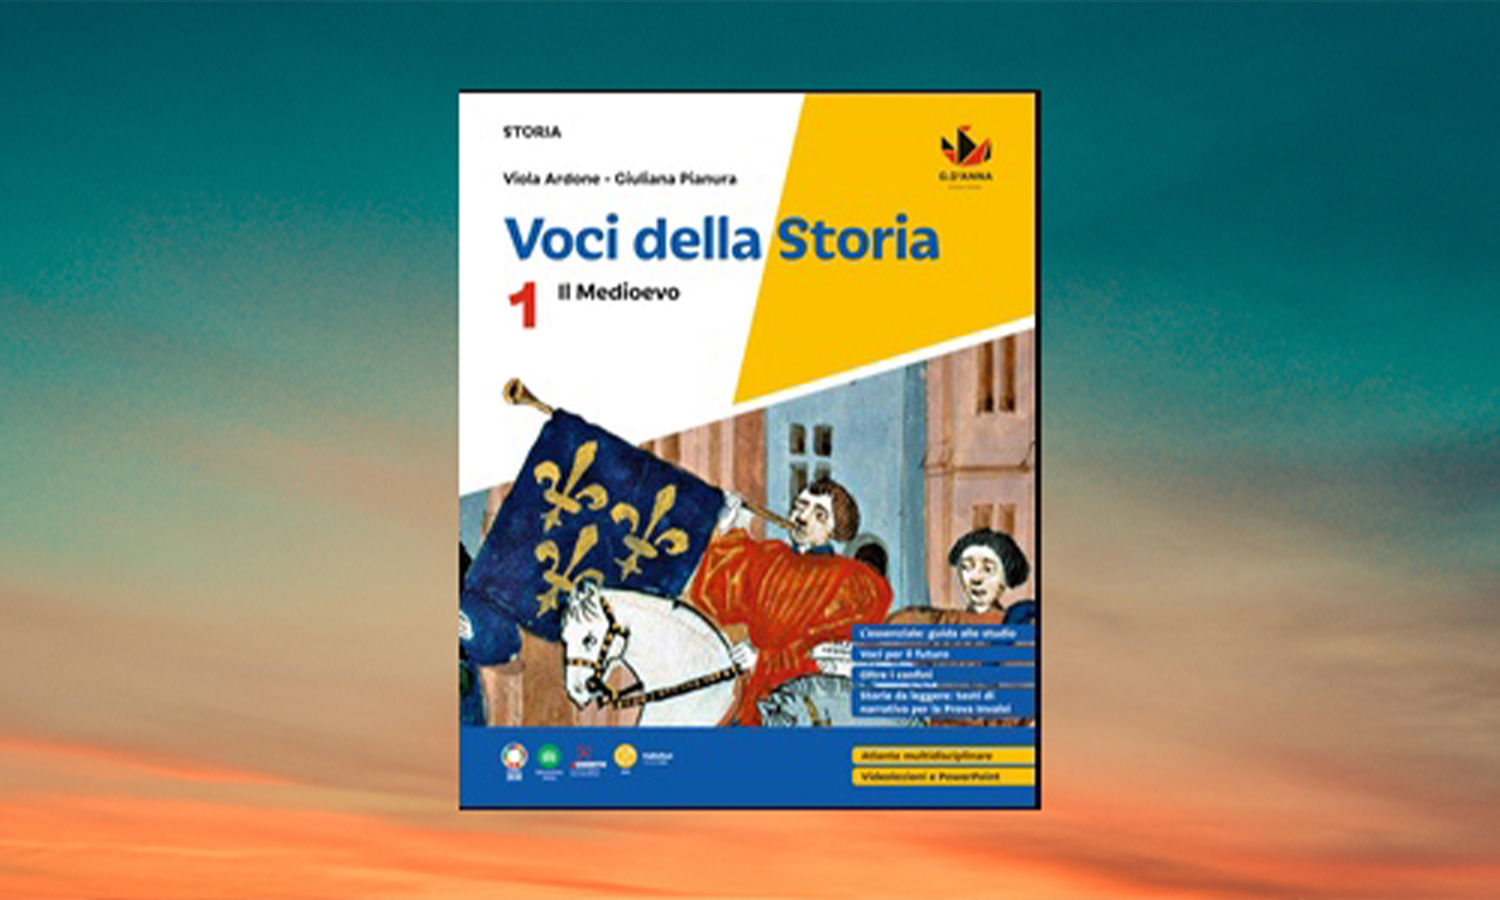 “Voci della storia”, di Viola Ardone e Giuliana Pianura